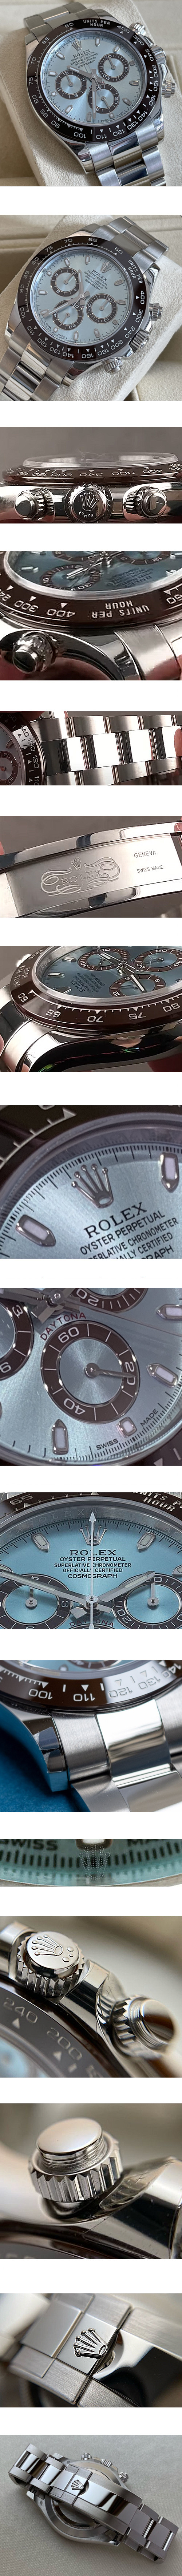 ロレックス腕時計の説明